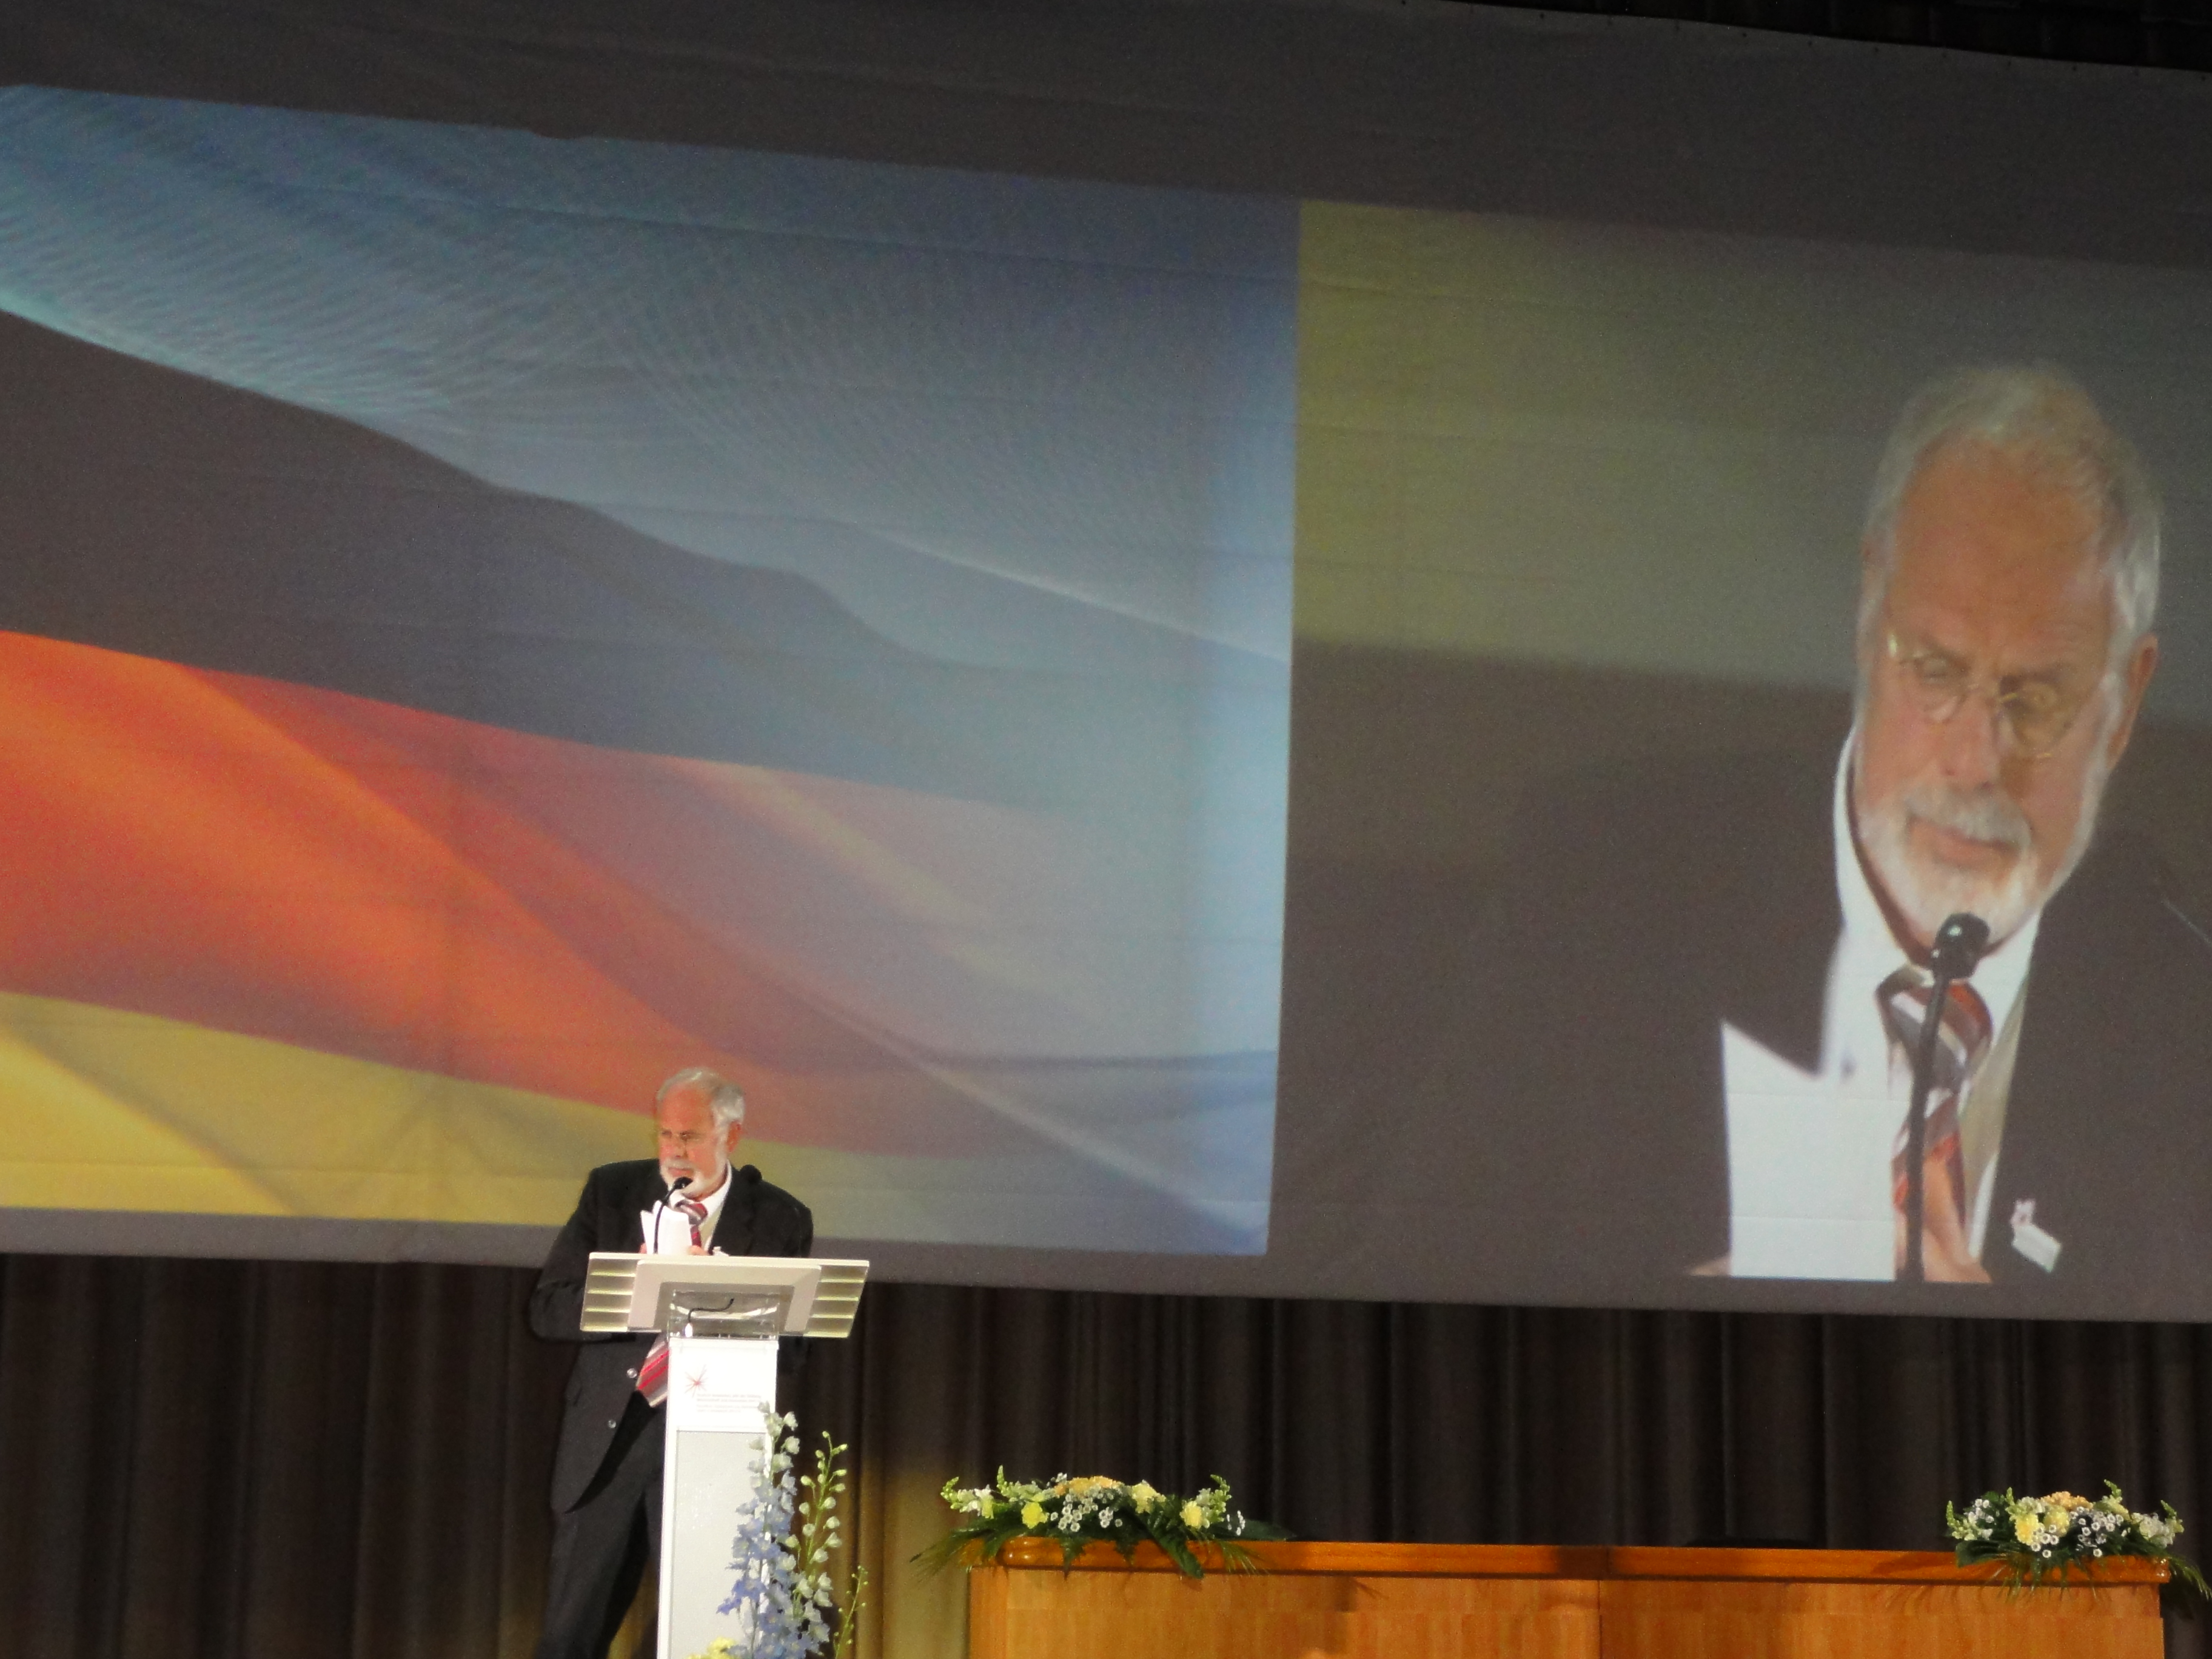 Вице-президент DFG проф. Петер Функе выступает на открытии Российско-Германского года образования, науки и инноваций, МГУ, май 2011